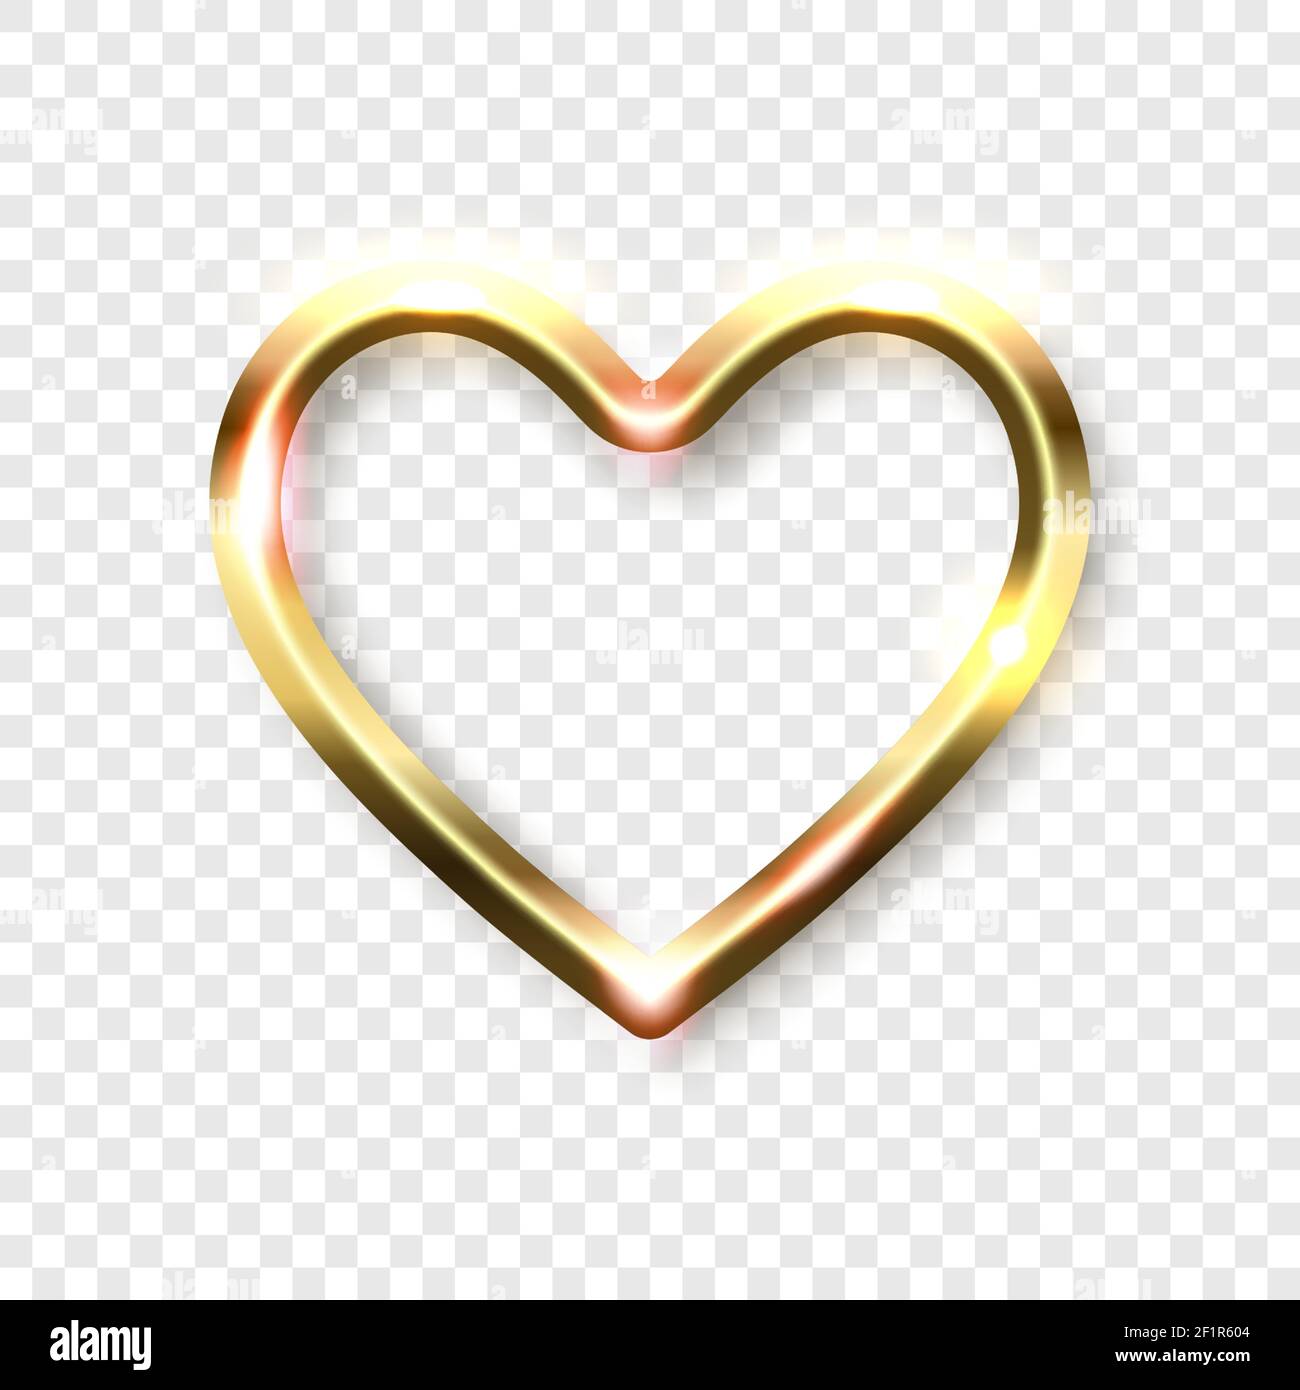 Cornice astratta con cuore dorato lucido con spazio vuoto per il testo, su sfondo trasparente, illustrazione vettoriale Illustrazione Vettoriale